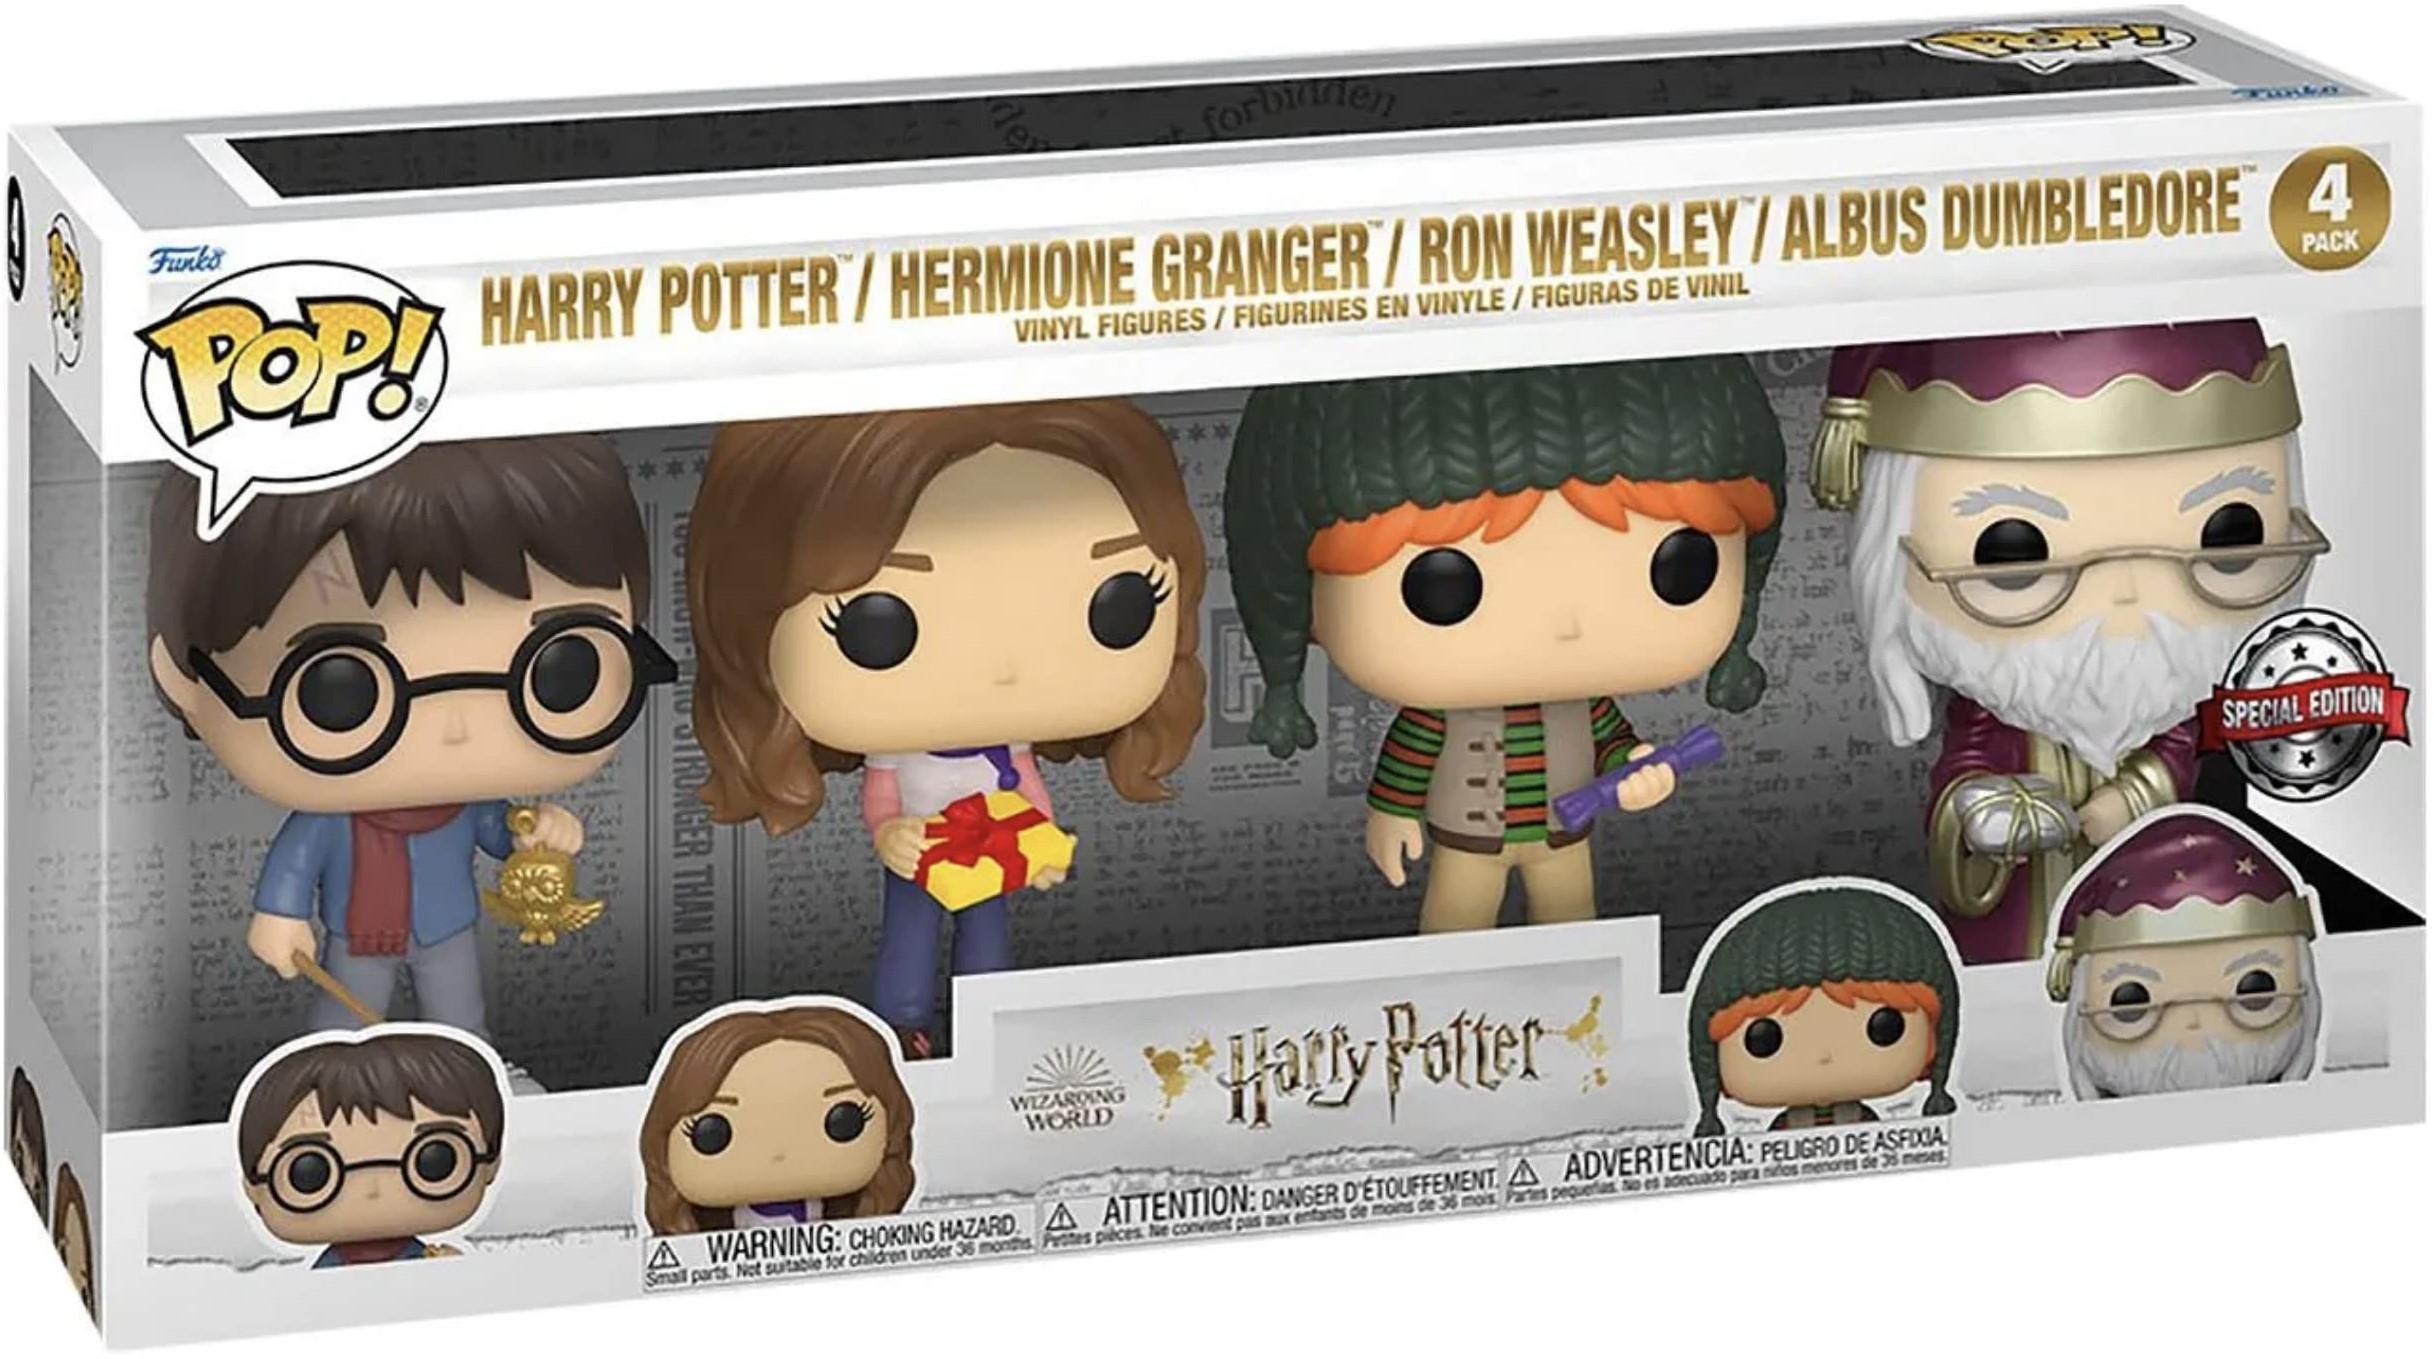 Harry Potter / Hermione Granger / Ron Weasley / Albus Dumbledore (holiday)  4-pack Pop Vinyl Harry Potter (Funko) metallic exclusive